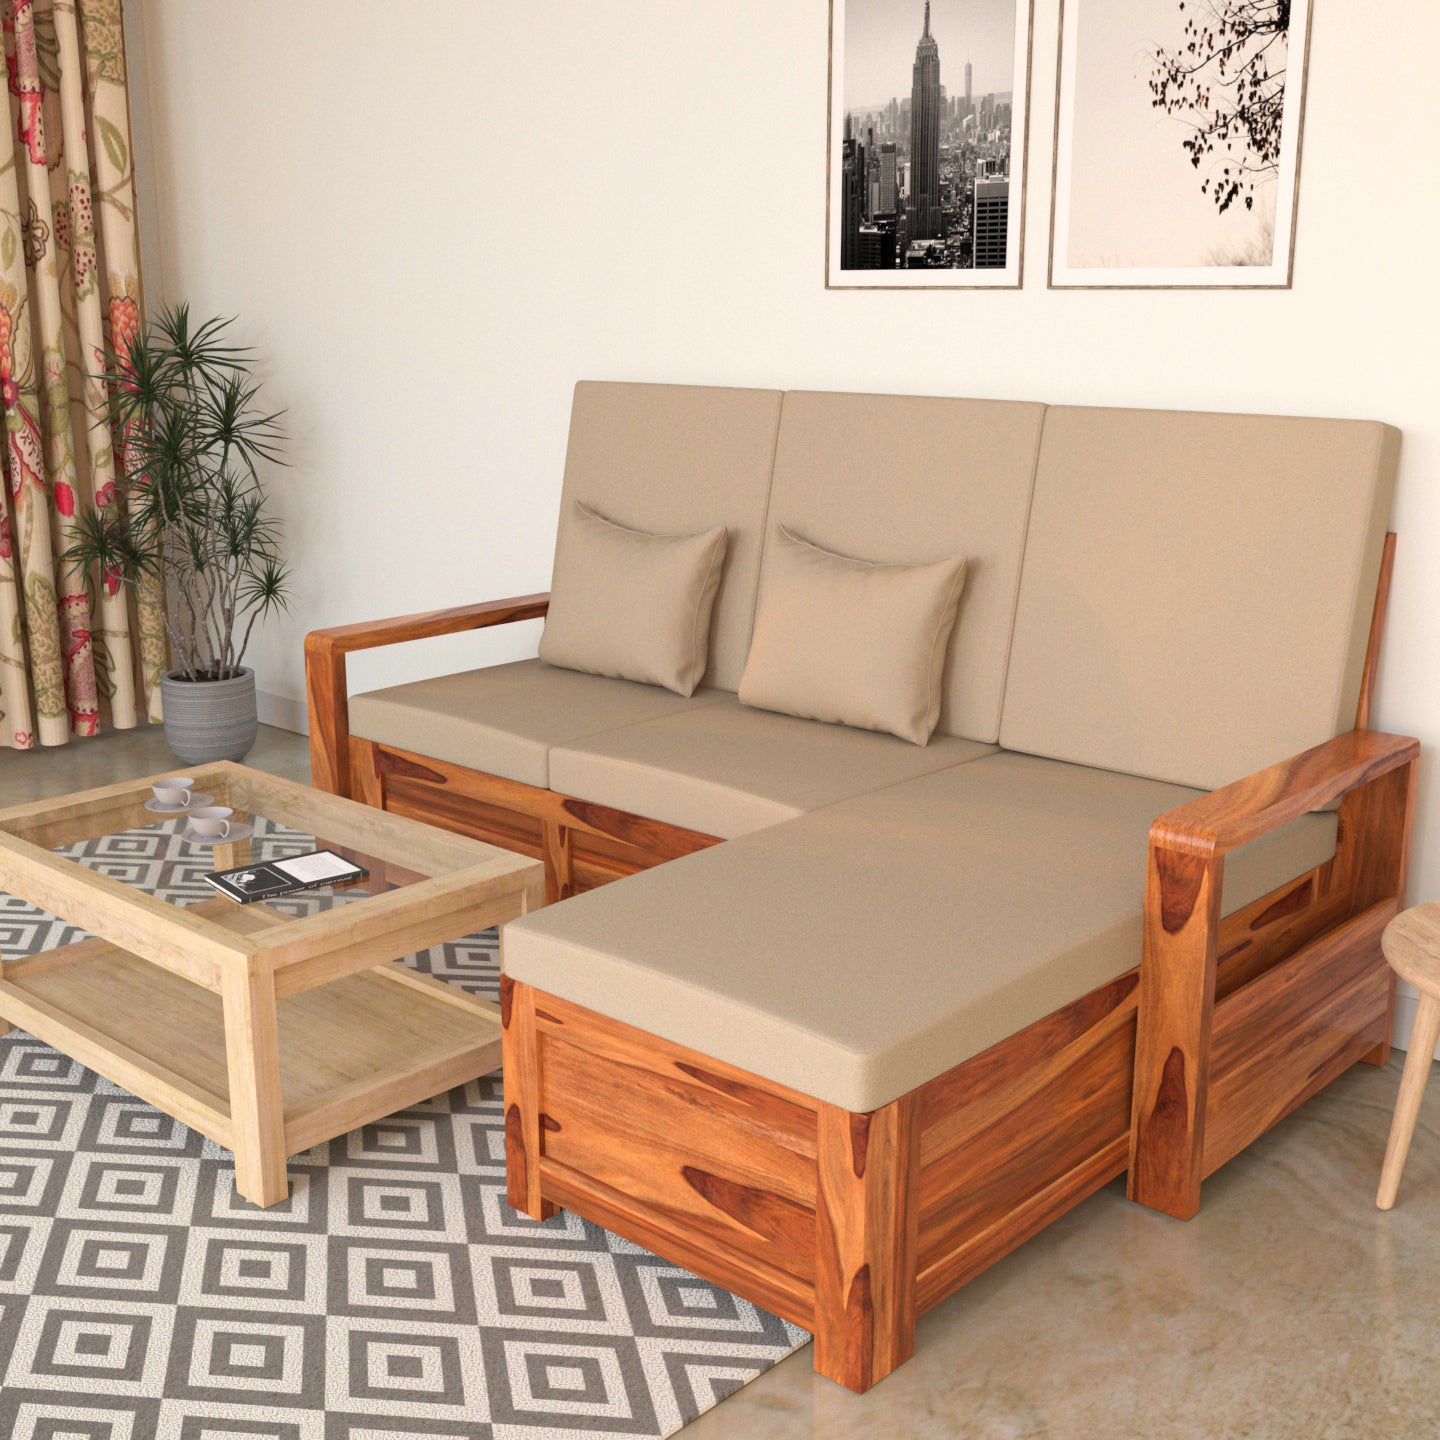 Tan Cream White Wooden Four Seater Sofa with Storage Sofa